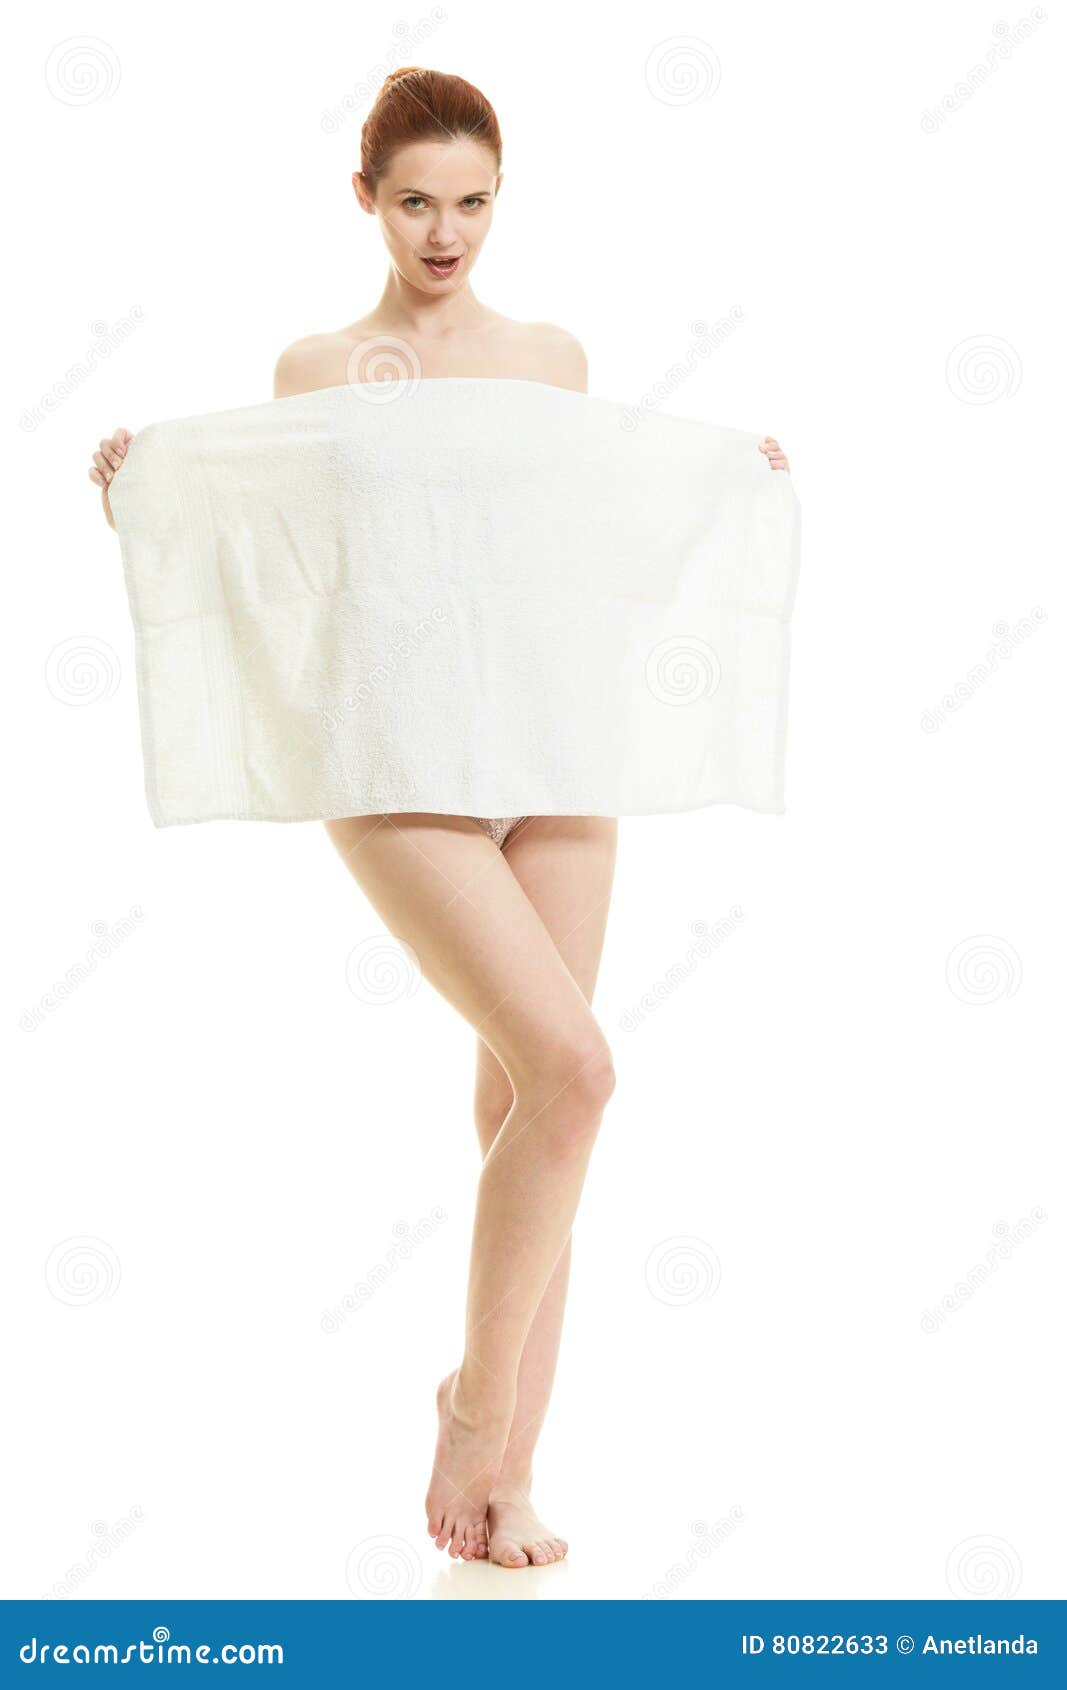 Ходит в полотенце. Прикрылась полотенцем. Девушка прикрывается. Женщина прикрывается полотенцем.